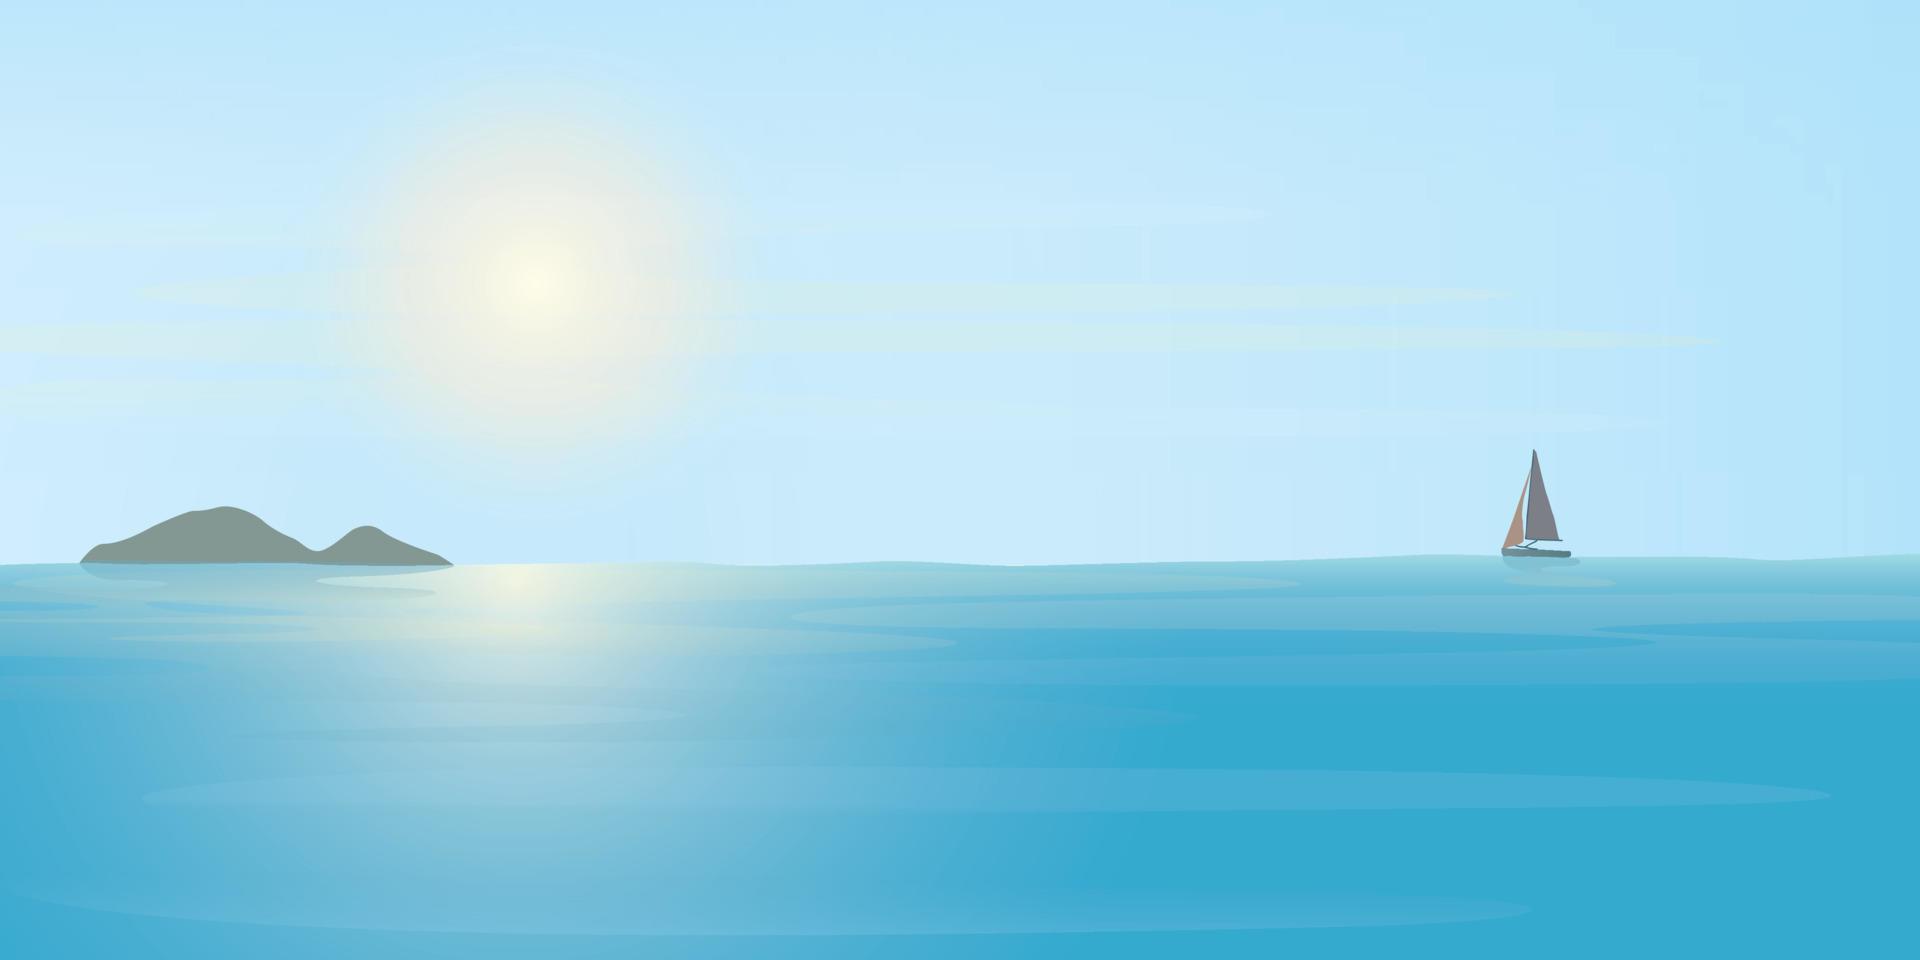 tropicale blu mare nel luce del sole giorno avere yatch e isola a orizzonte illustrazione. paesaggio marino e blu cielo piatto design. vettore